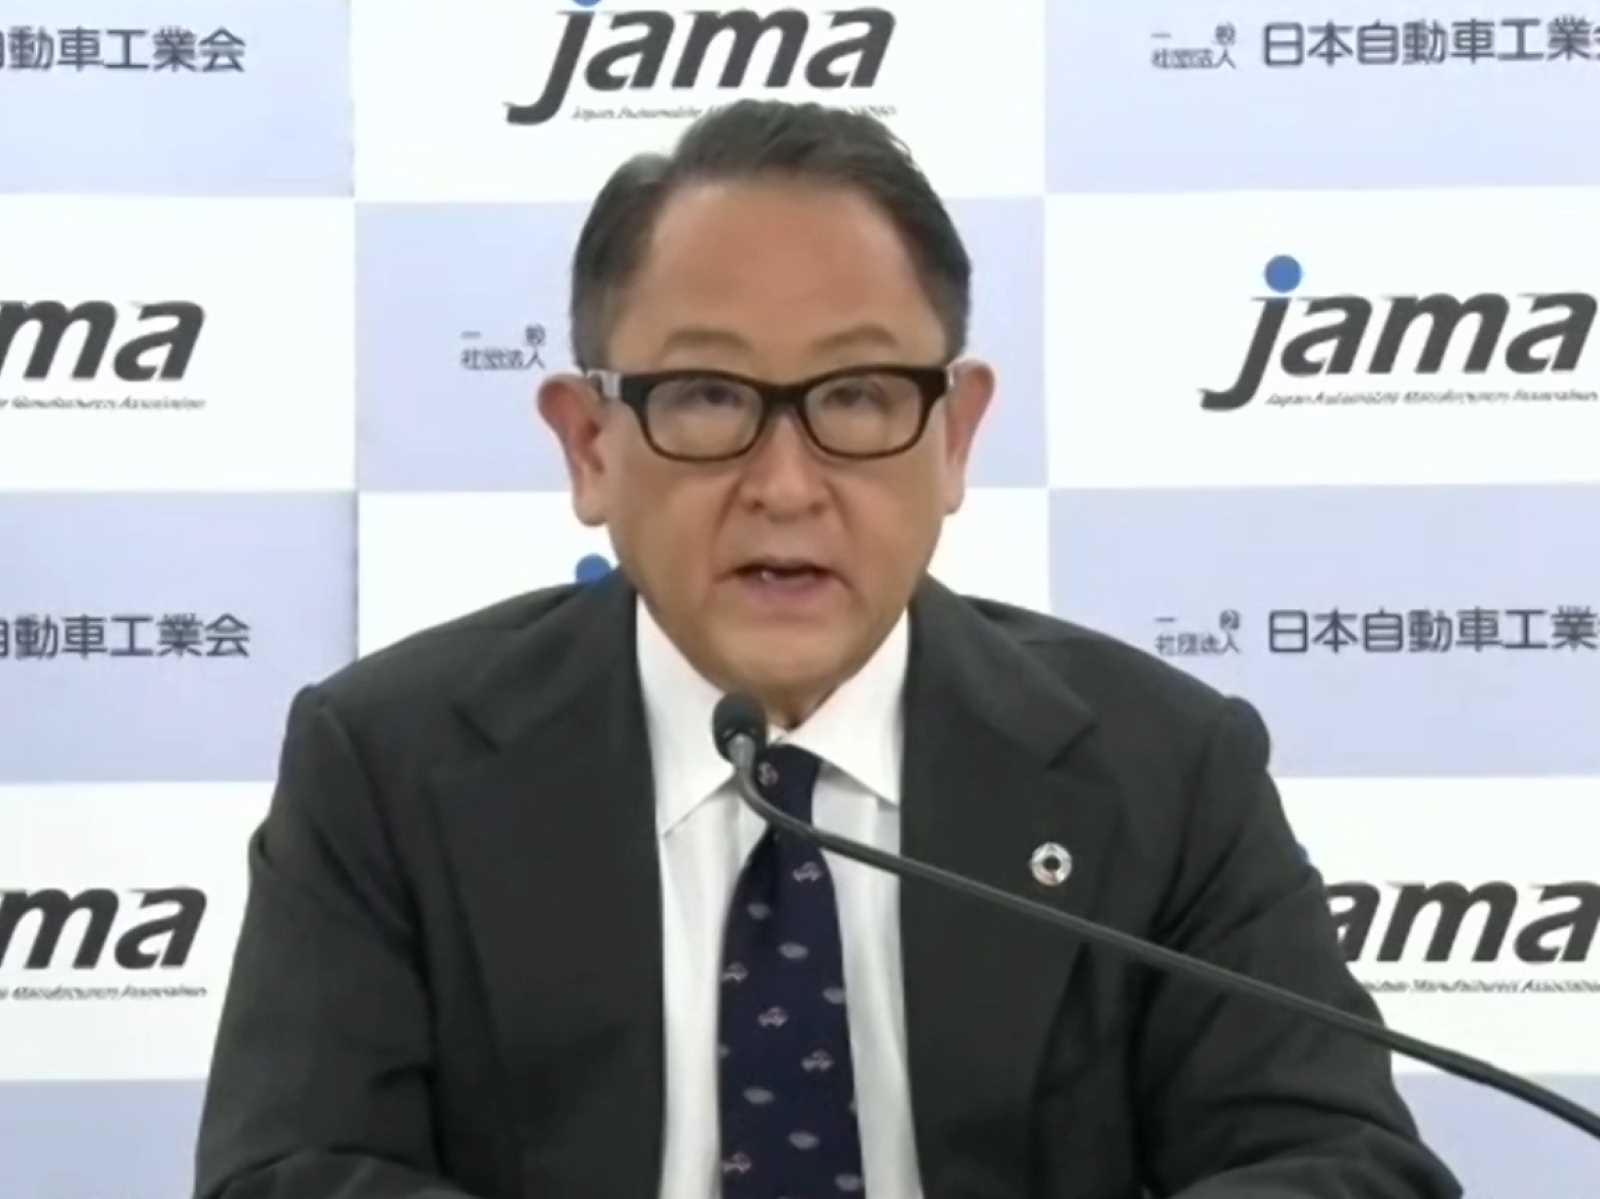 図　JAMA会長の豊田章男氏 （オンライン会見の画面をキャプチャー）